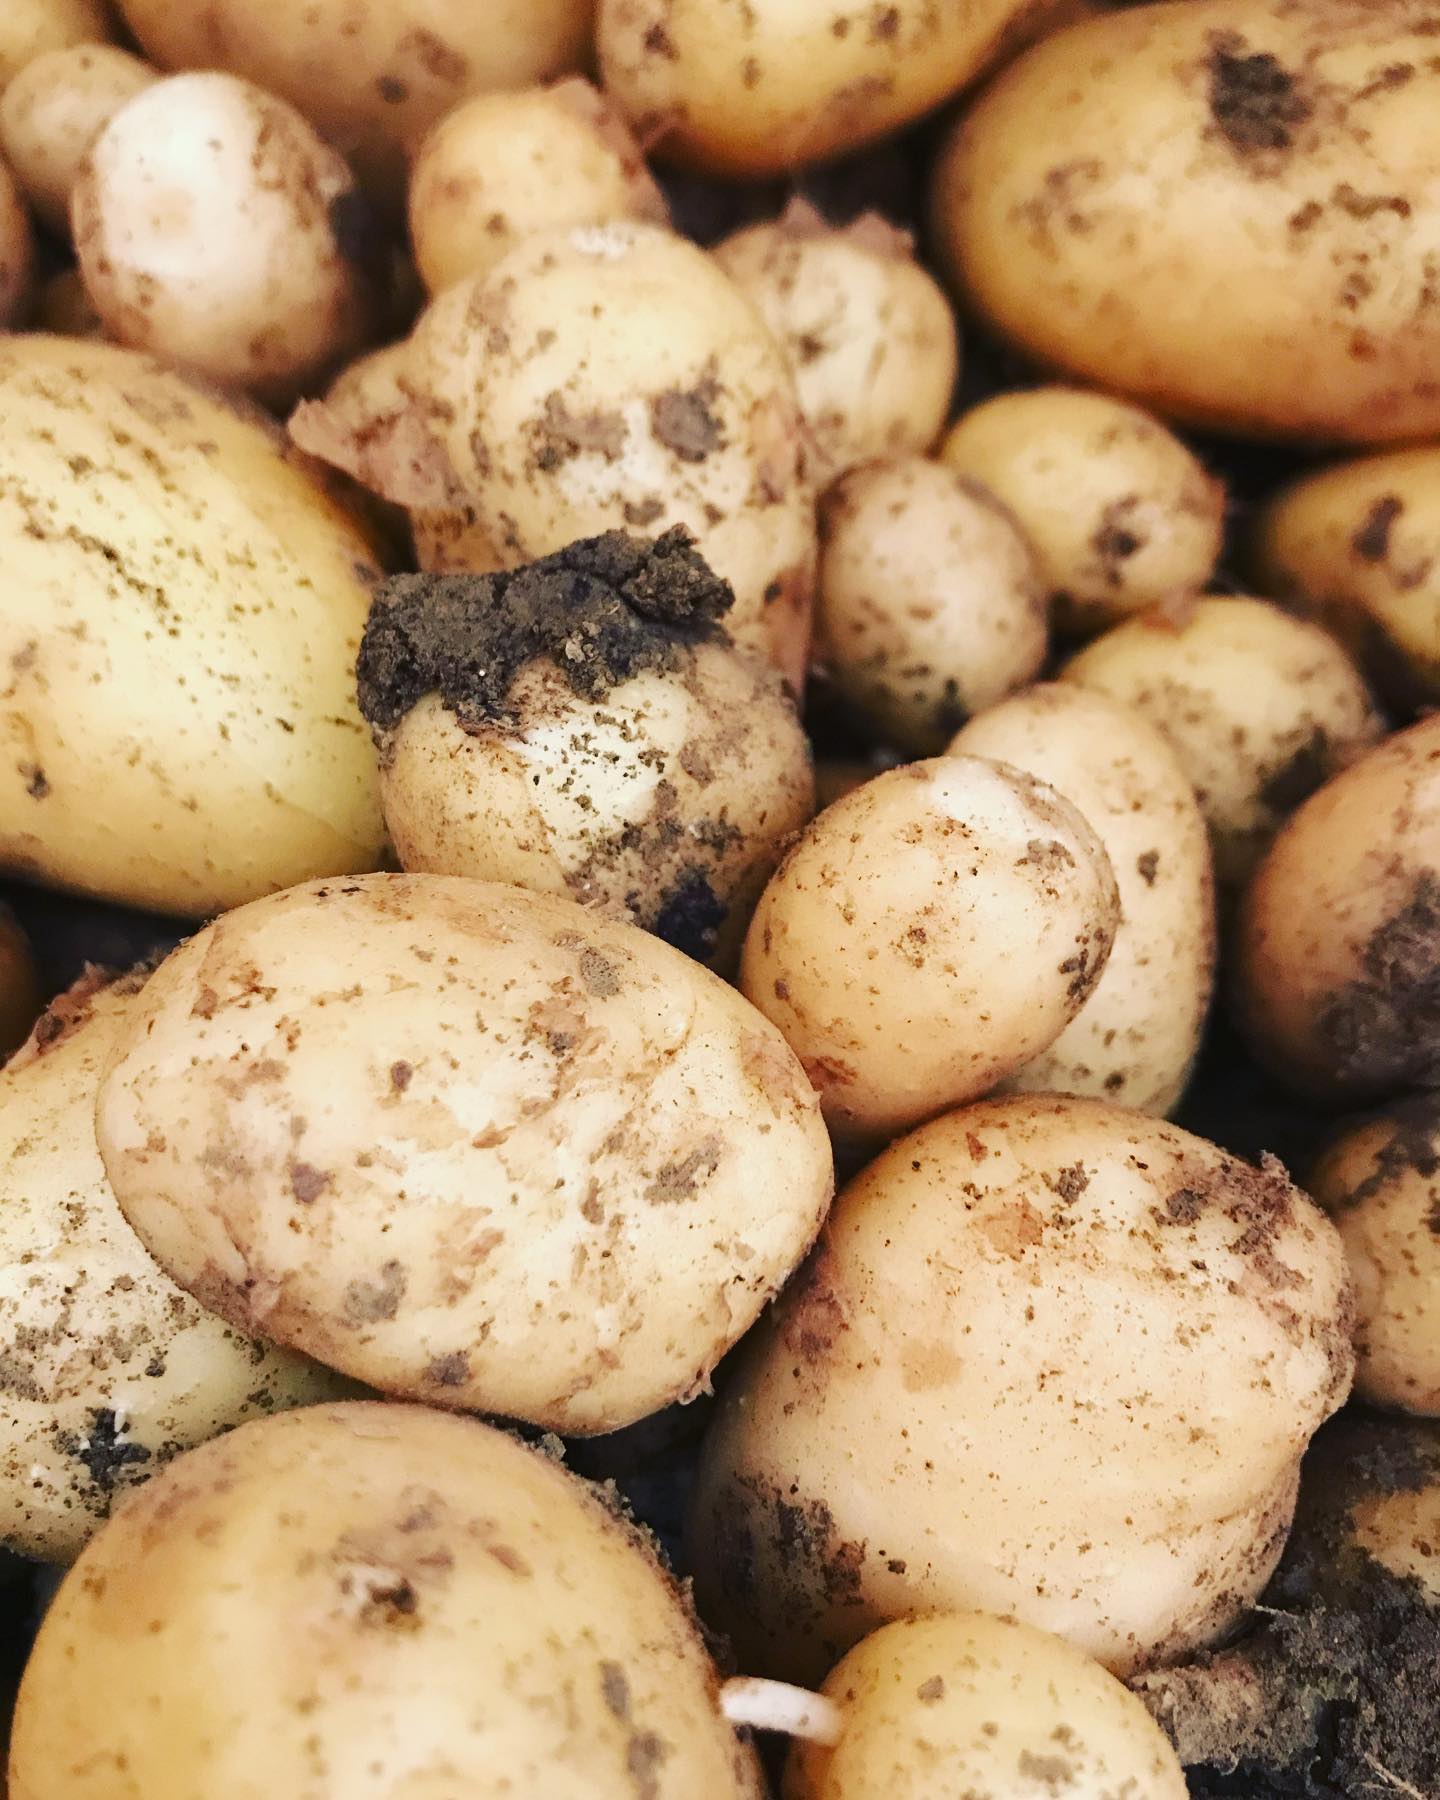 Enfin ! Des pommes de terre 🥔 nouvelles en direct producteur de la maraîchère à Ecoublay … on va se régaler ! Bisous #pommedeterrenouvelle #maraichagebio #bioetlocale #onvaseregaler #produitbio #patate #envrac #bisous #lebioenvrac